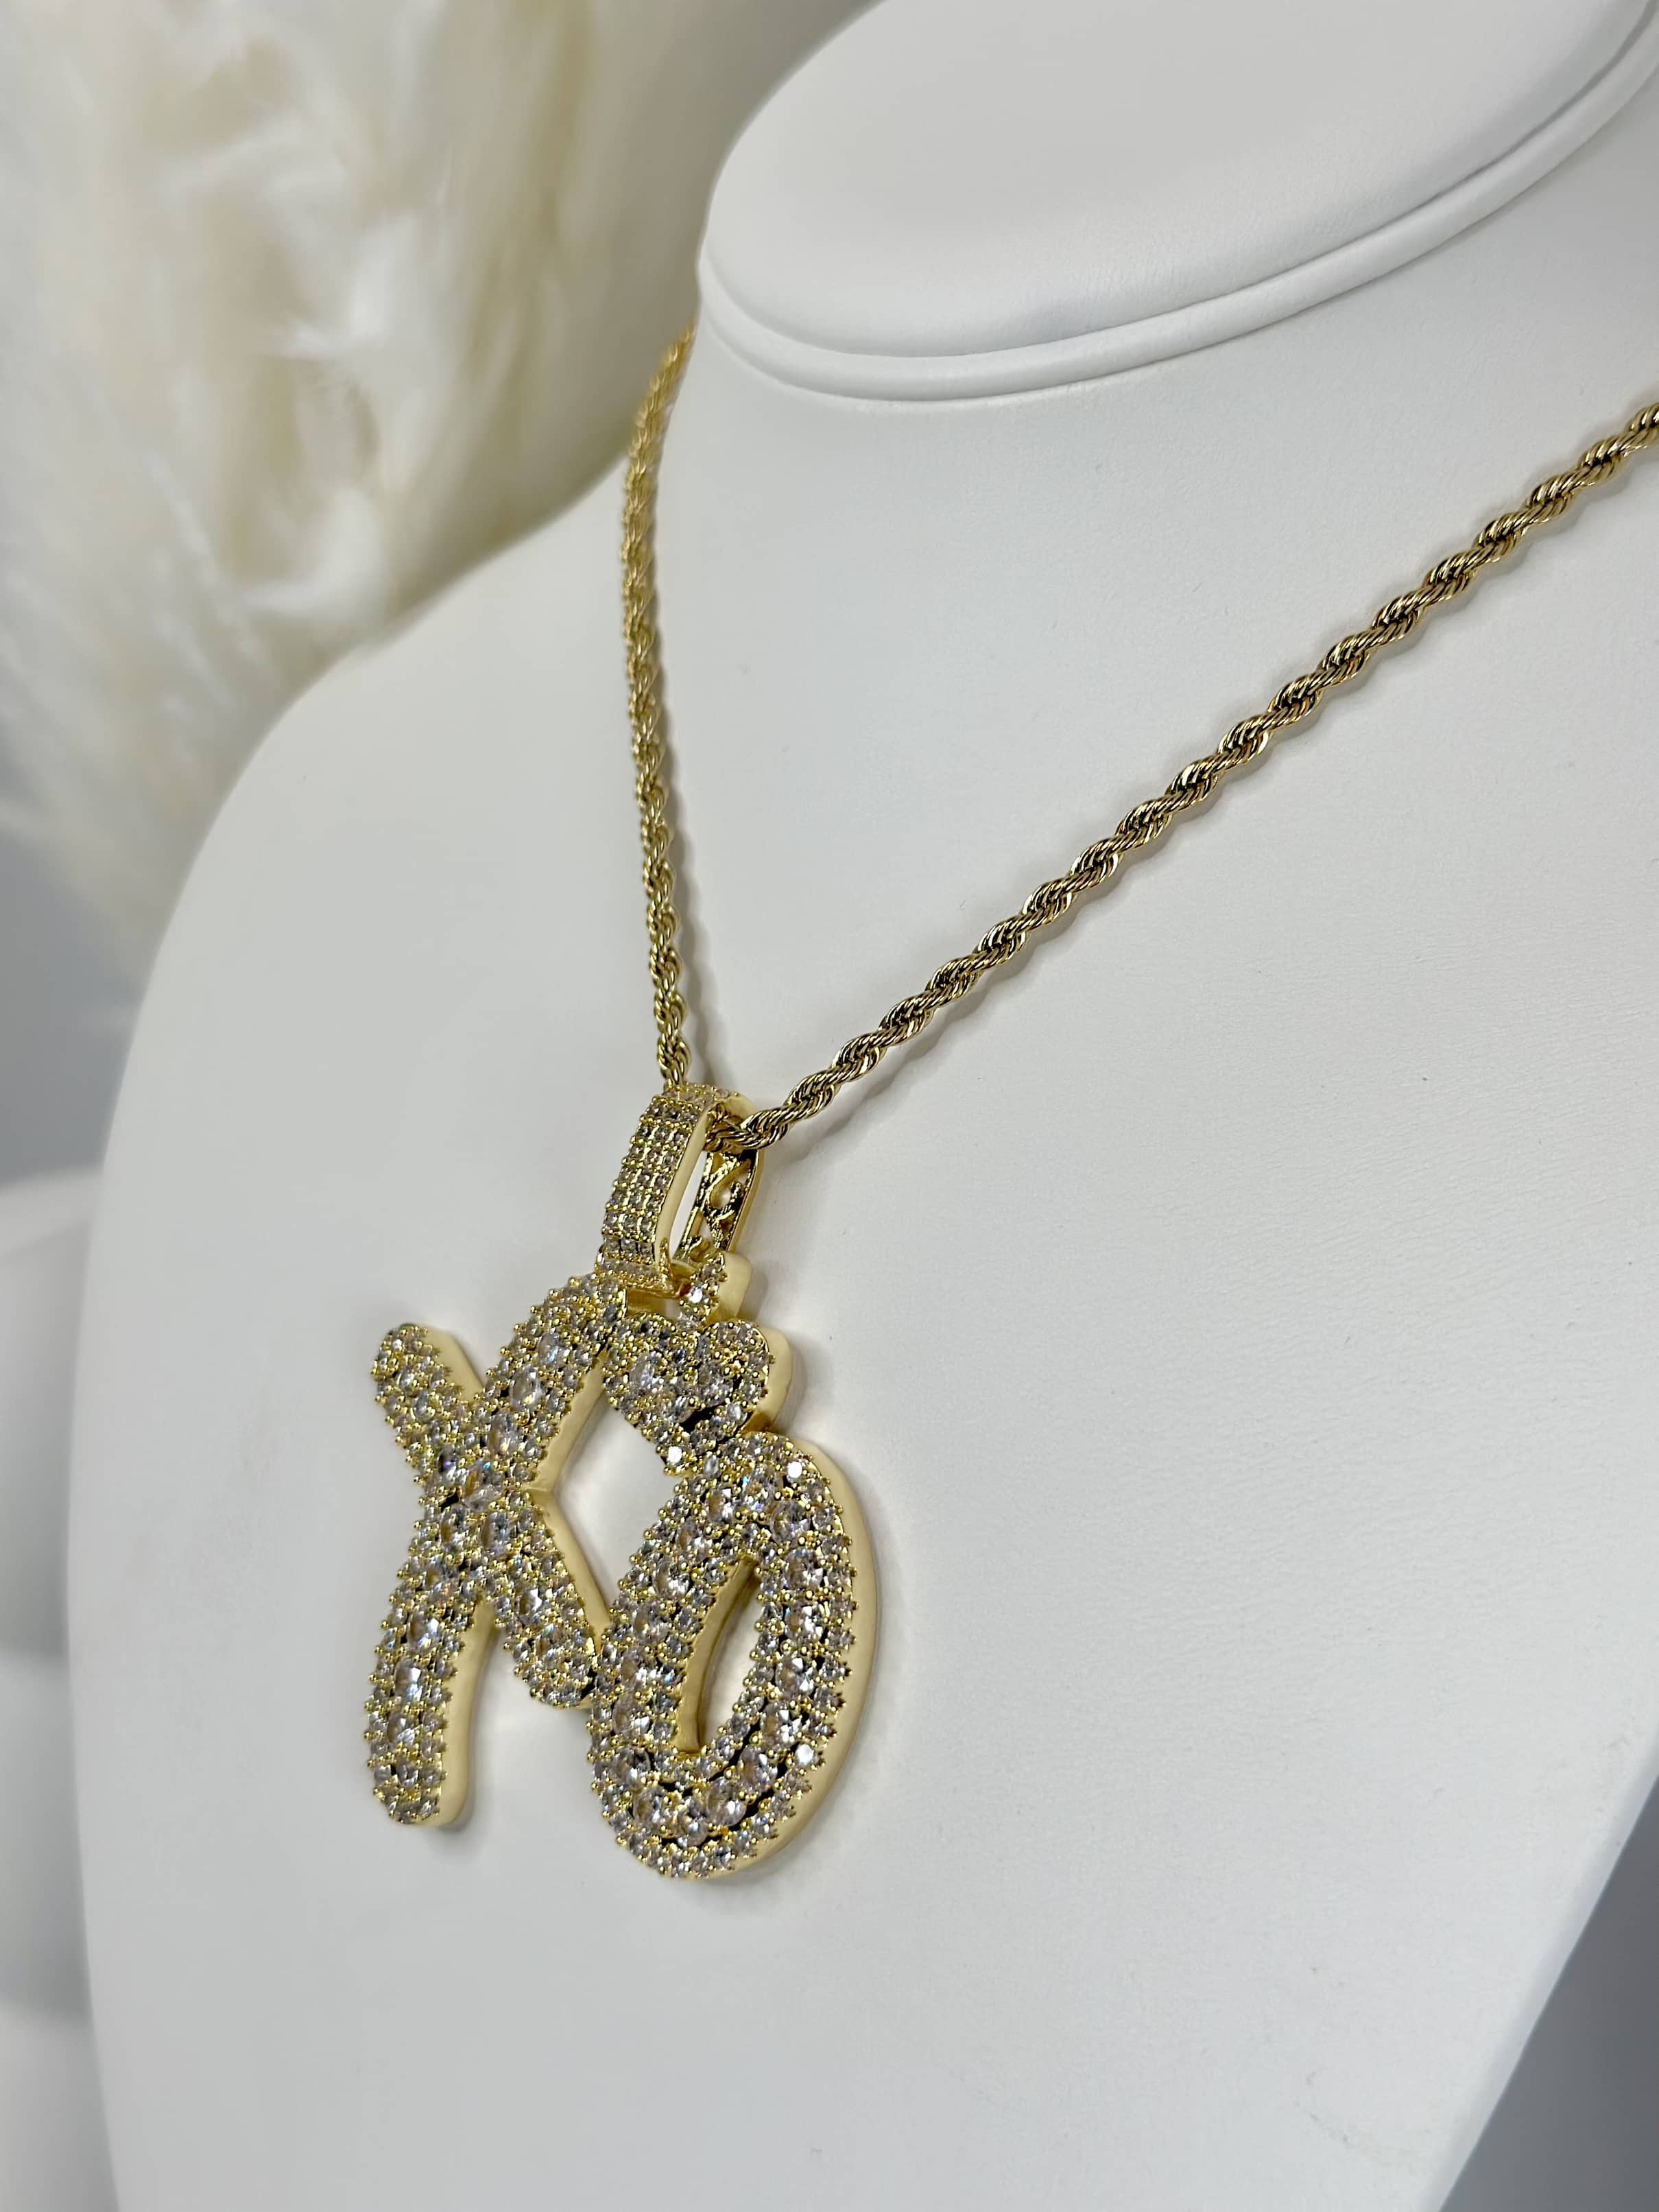 XO CZ Gold Necklace - Womens Fashion Jewelry – Lil Pepper Jewelry